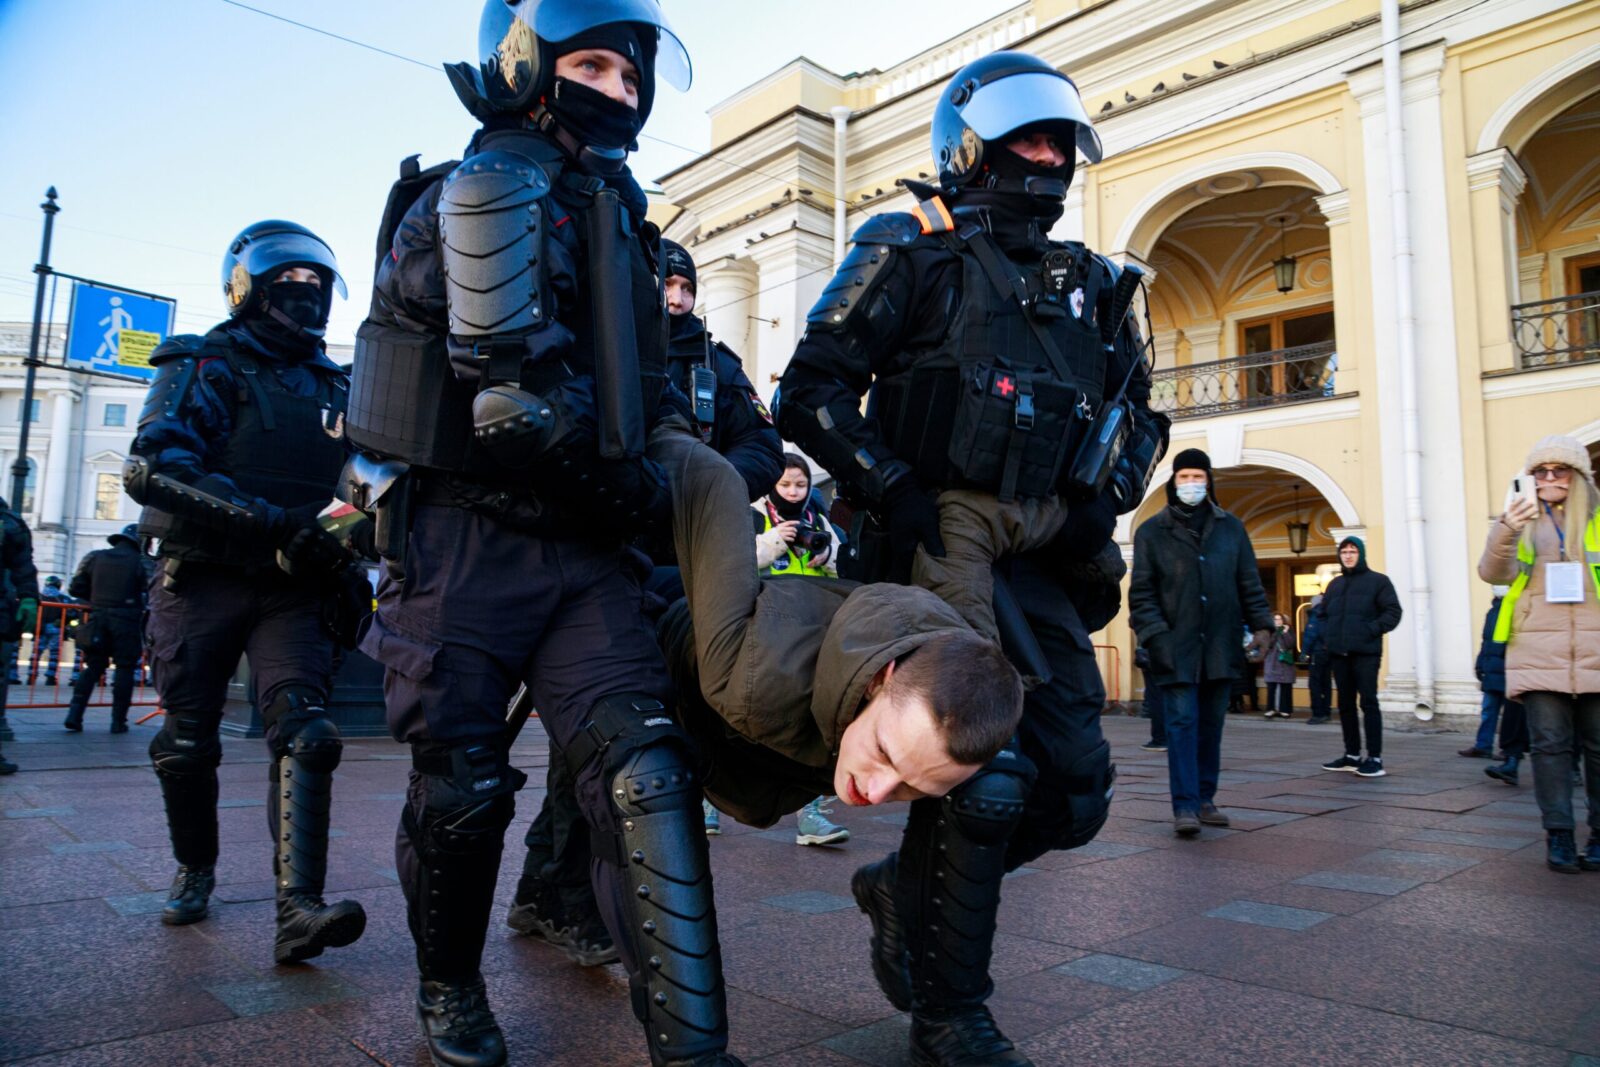 Cảnh sát bắt giữ những người phản đối &quot;chiến dịch quân sự đặc biệt&quot; ở Ukraine tại một cuộc biểu tình ở St. Petersburg vào tháng 3 năm 2022. Ảnh:@ Konstantin Lenkov / Shutterstock.